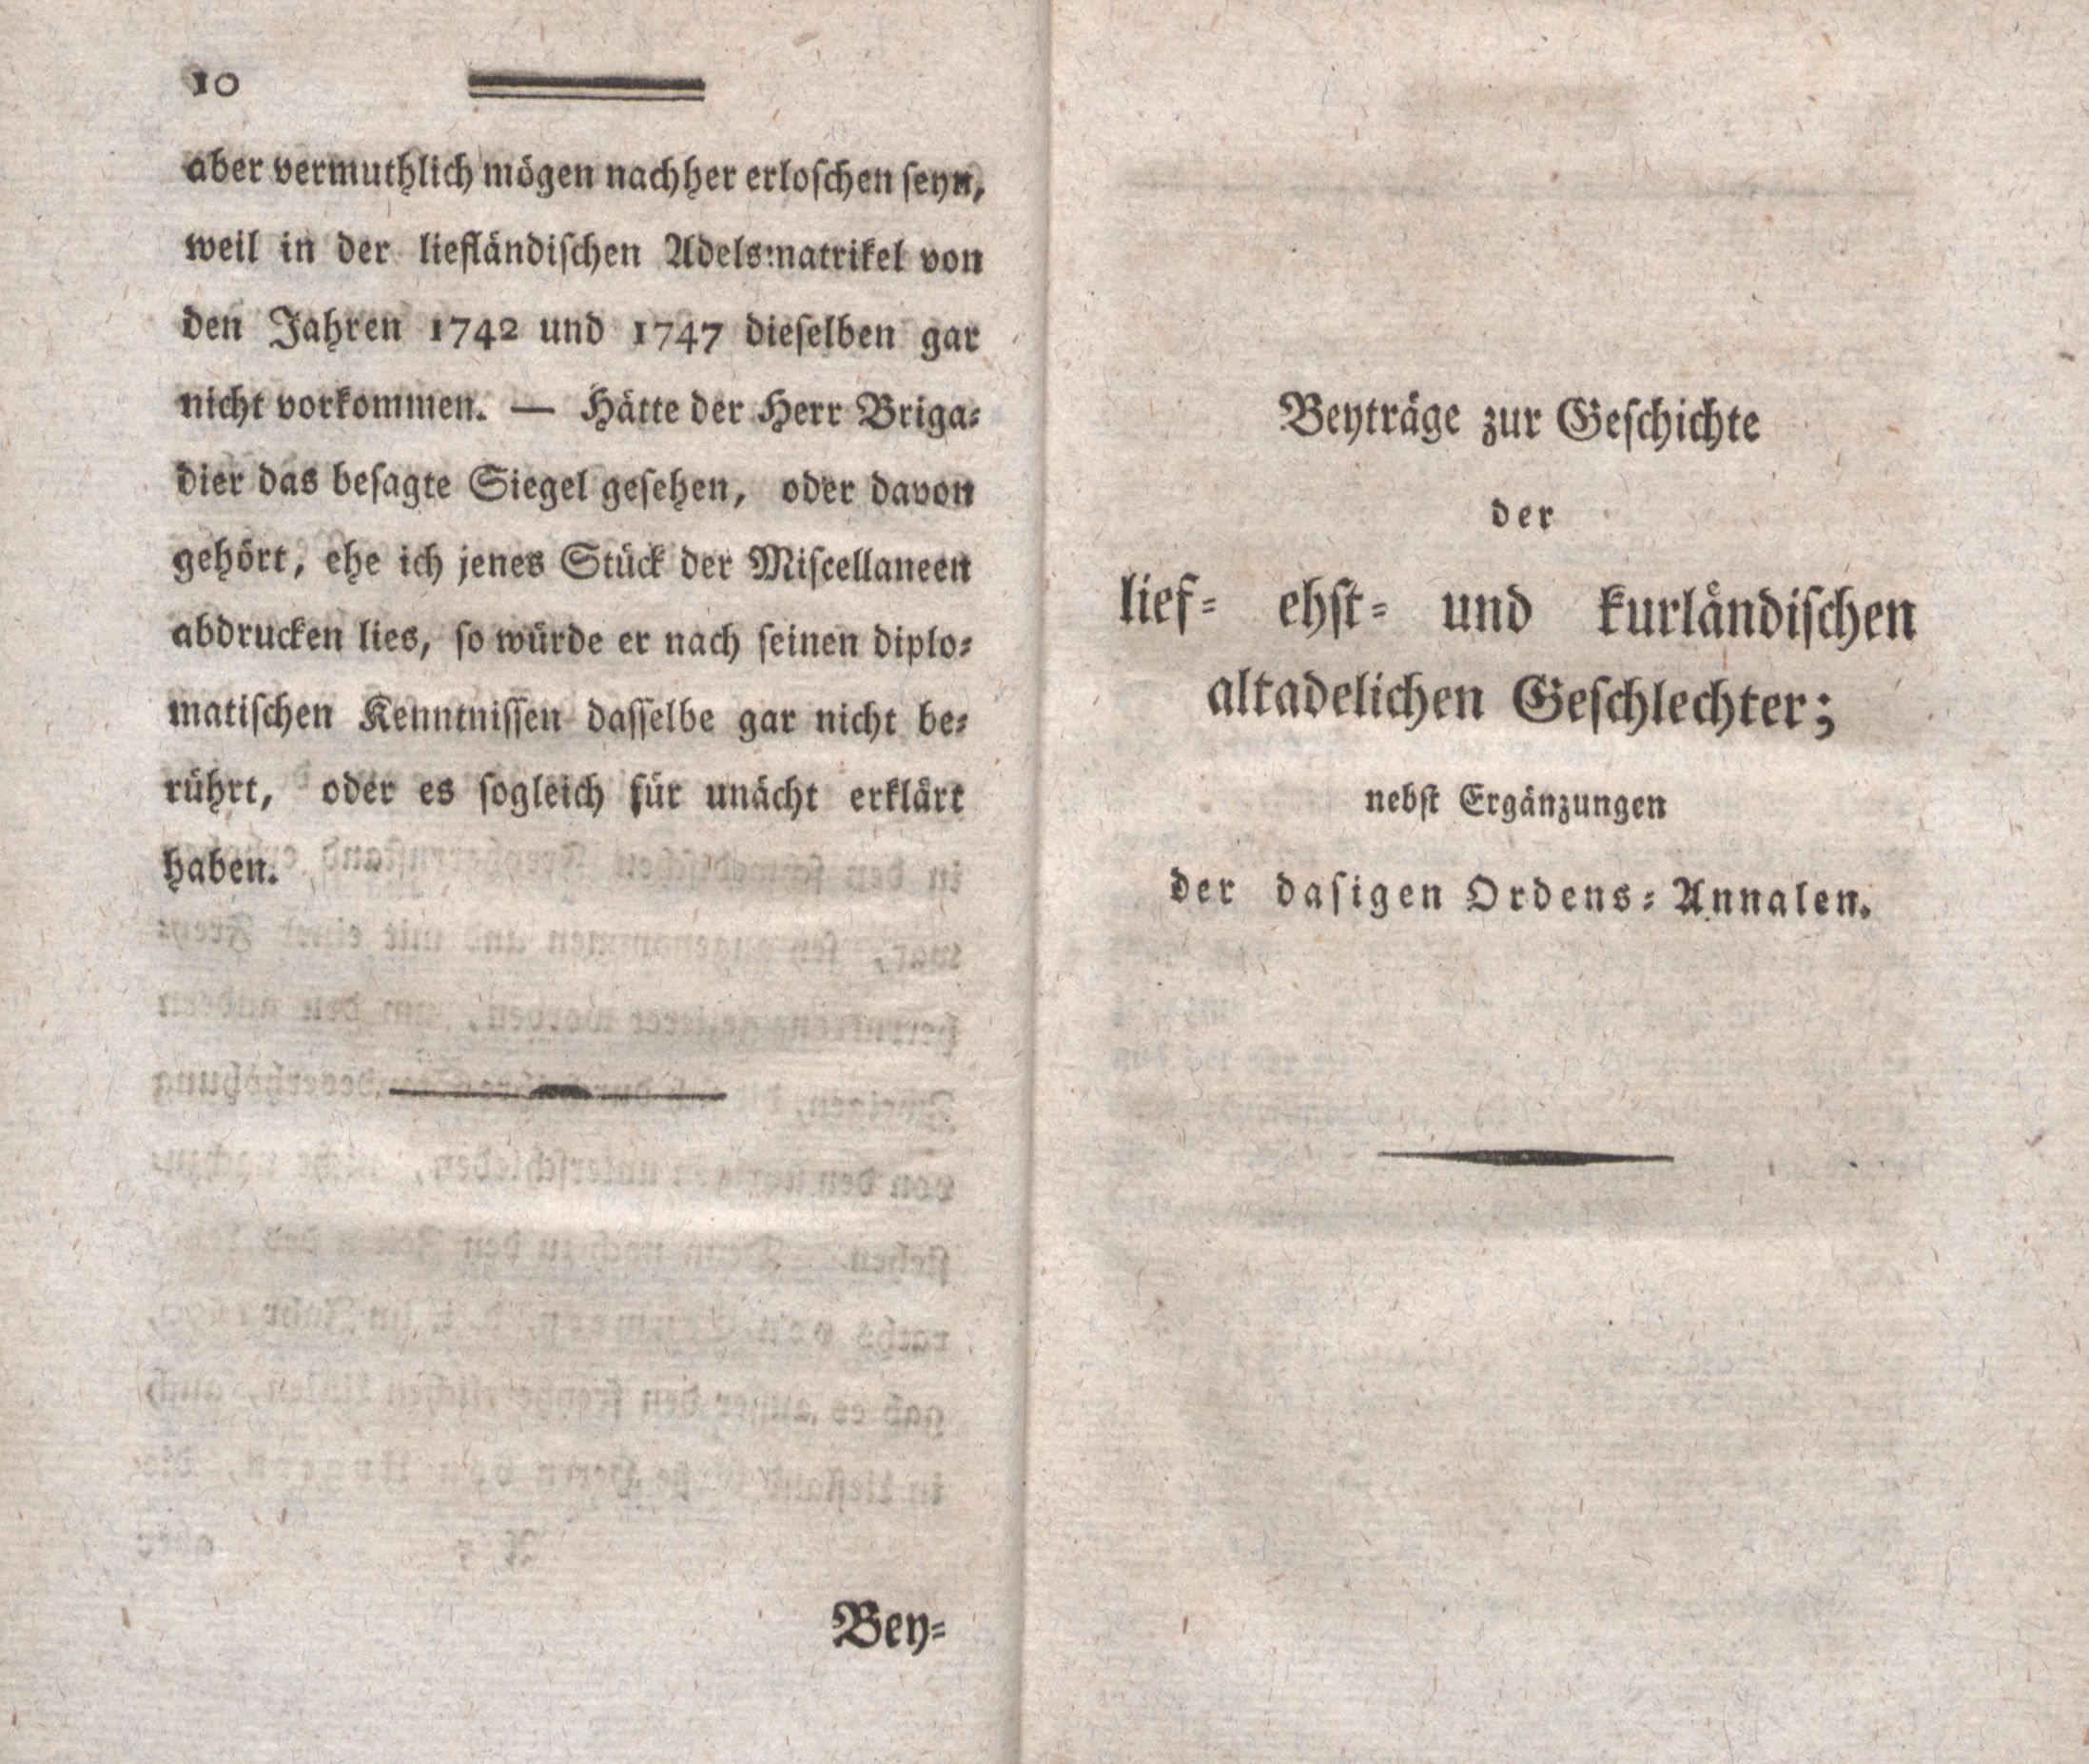 Beyträge zur Geschichte der lief-, ehst- und kurländischen altadelichen Geschlechter (1794) | 1. (10-11) Eessõna, Põhitekst